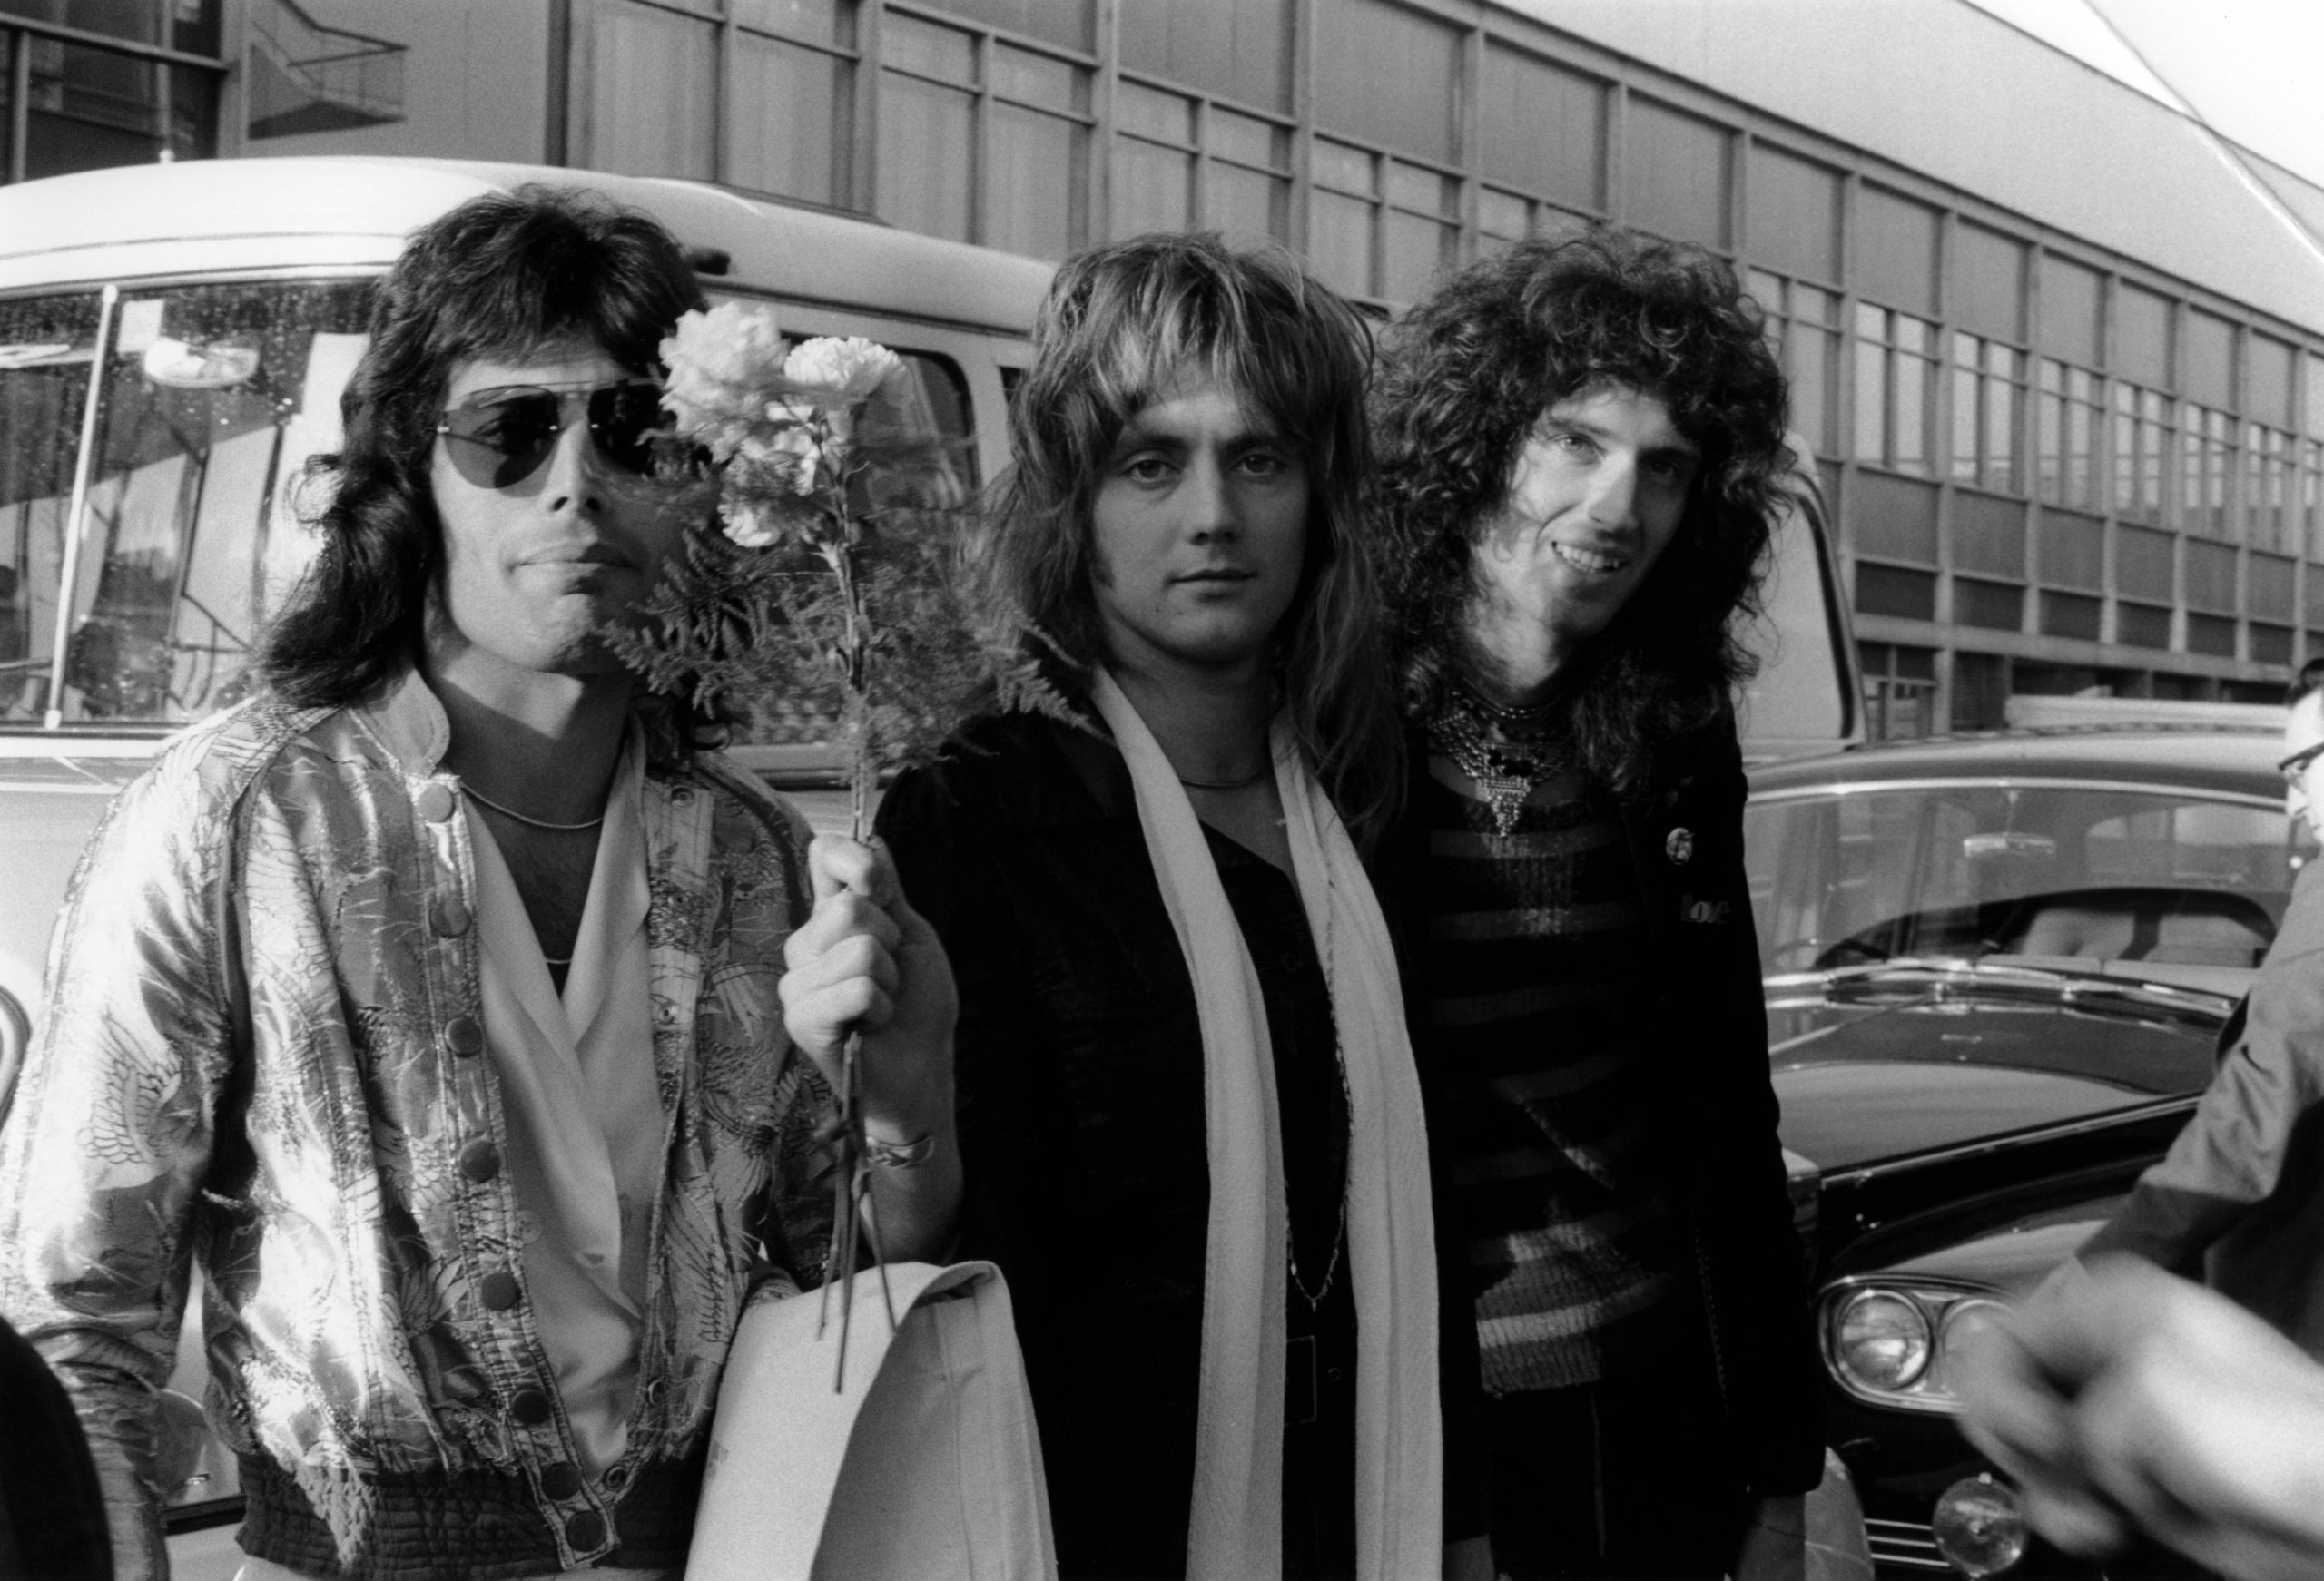 Lo que hubiera sido: Roger Taylor dice que Queen seguiría si Freddie Mercury estuviera vivo